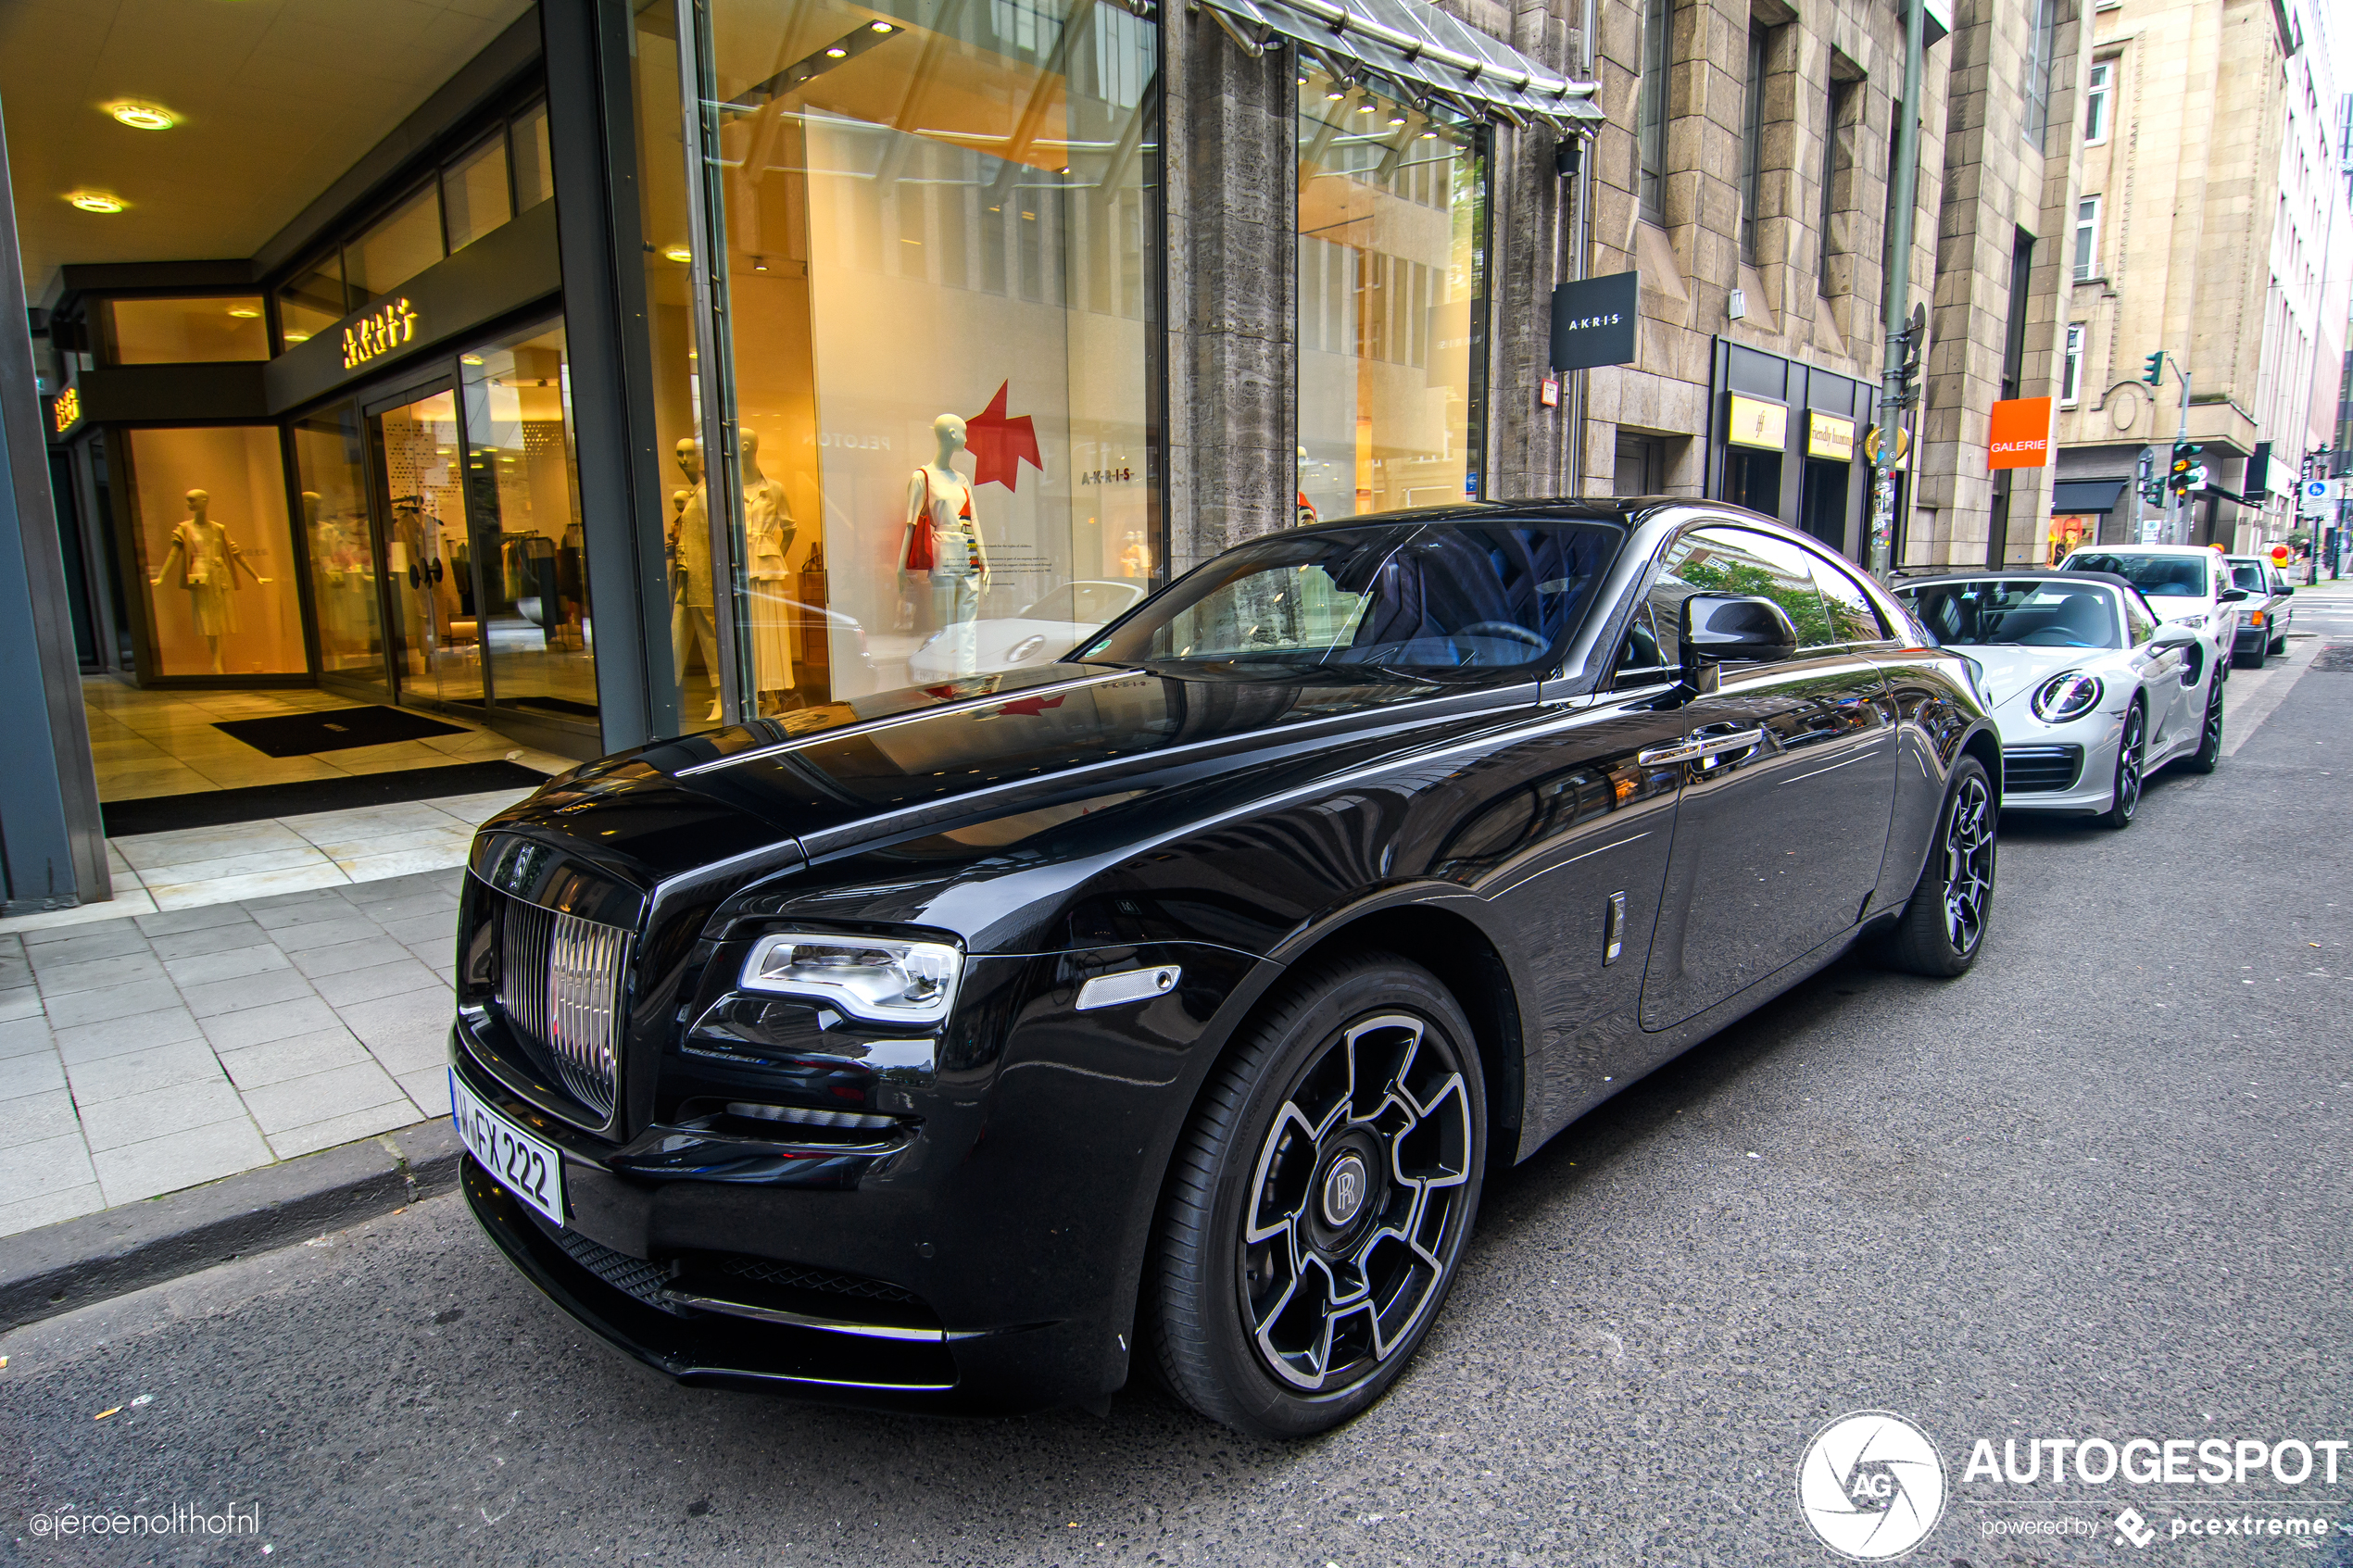 Rolls-Royce Wraith rolt op karrenwielen